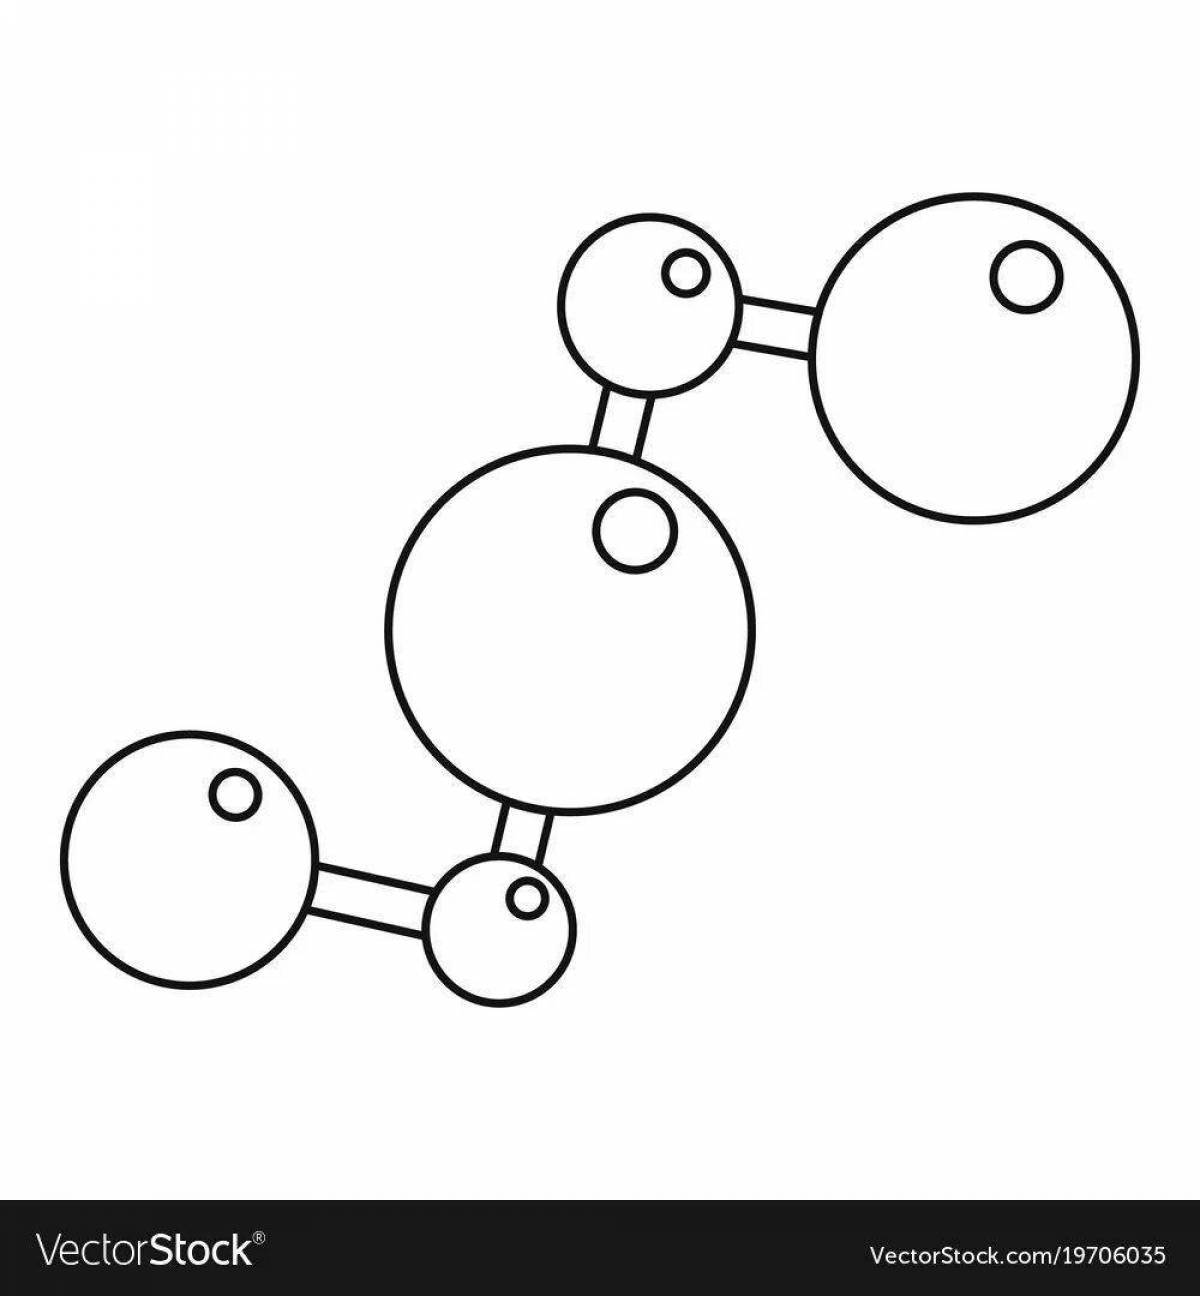 Magic water molecule coloring page